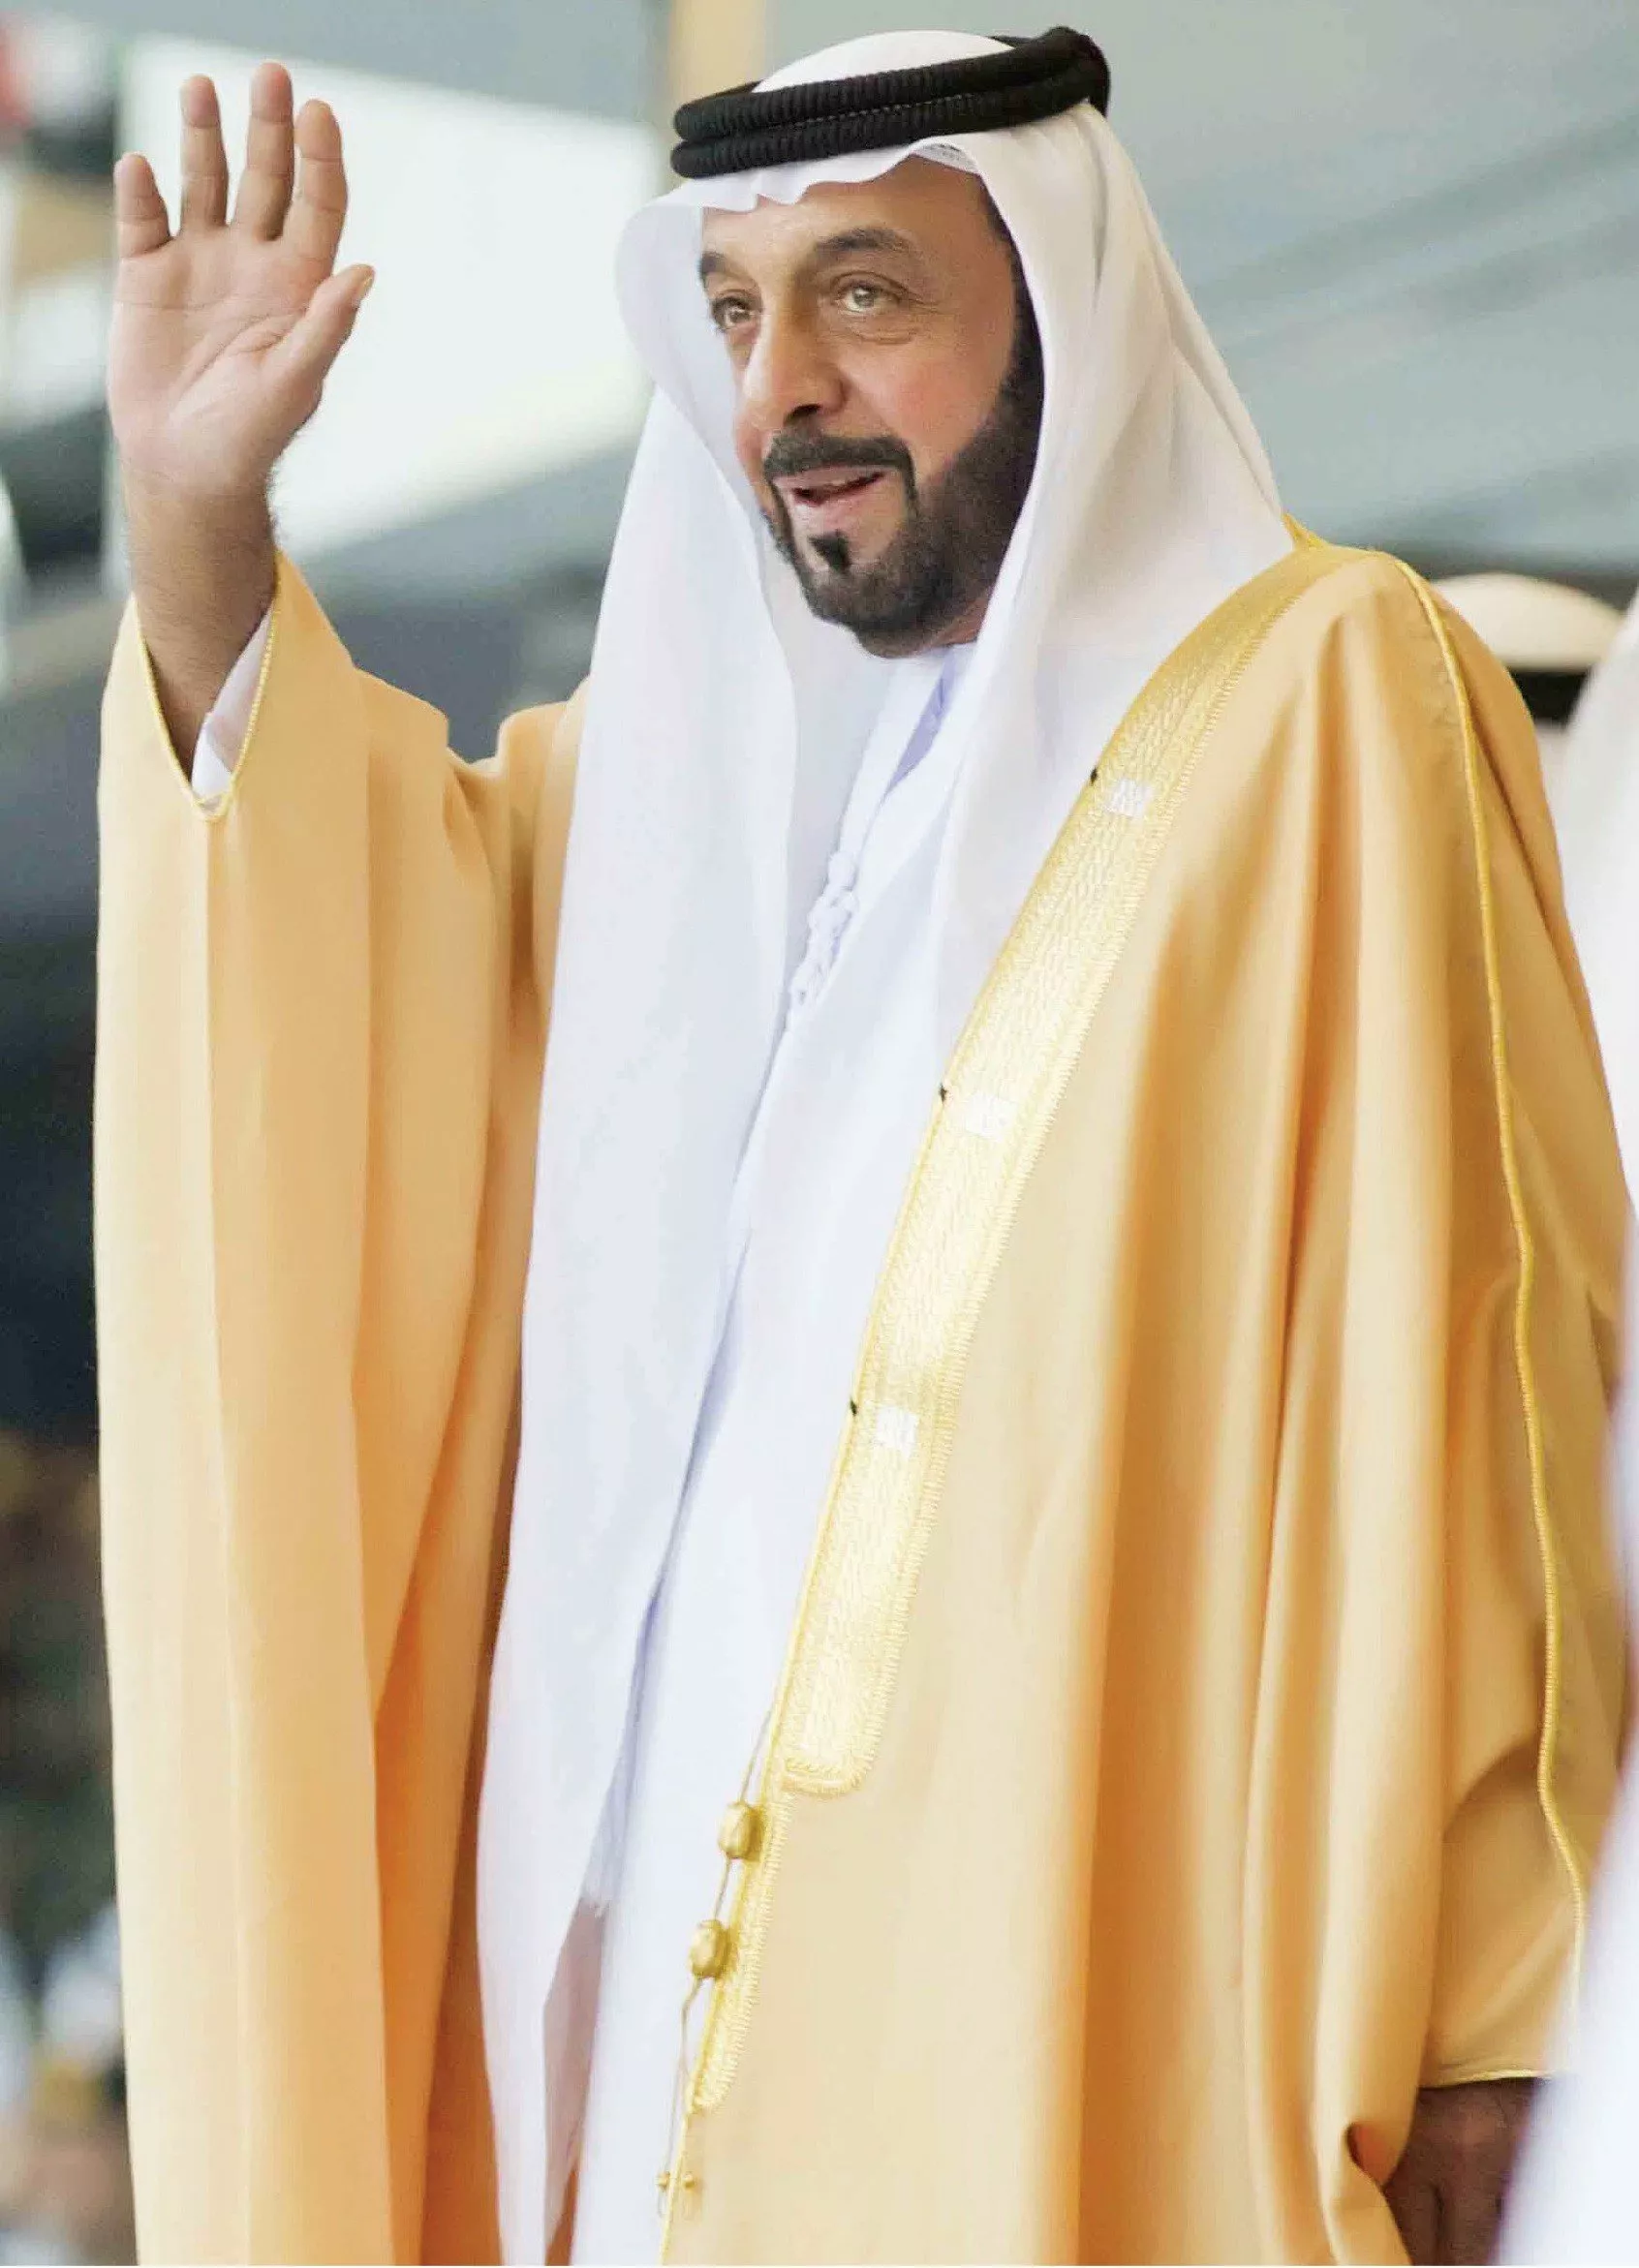 وفاة الشيخ خليفة بن زايد آل نهيان، رئيس دولة الإمارات، عن عمر يناهز الـ73عاماً